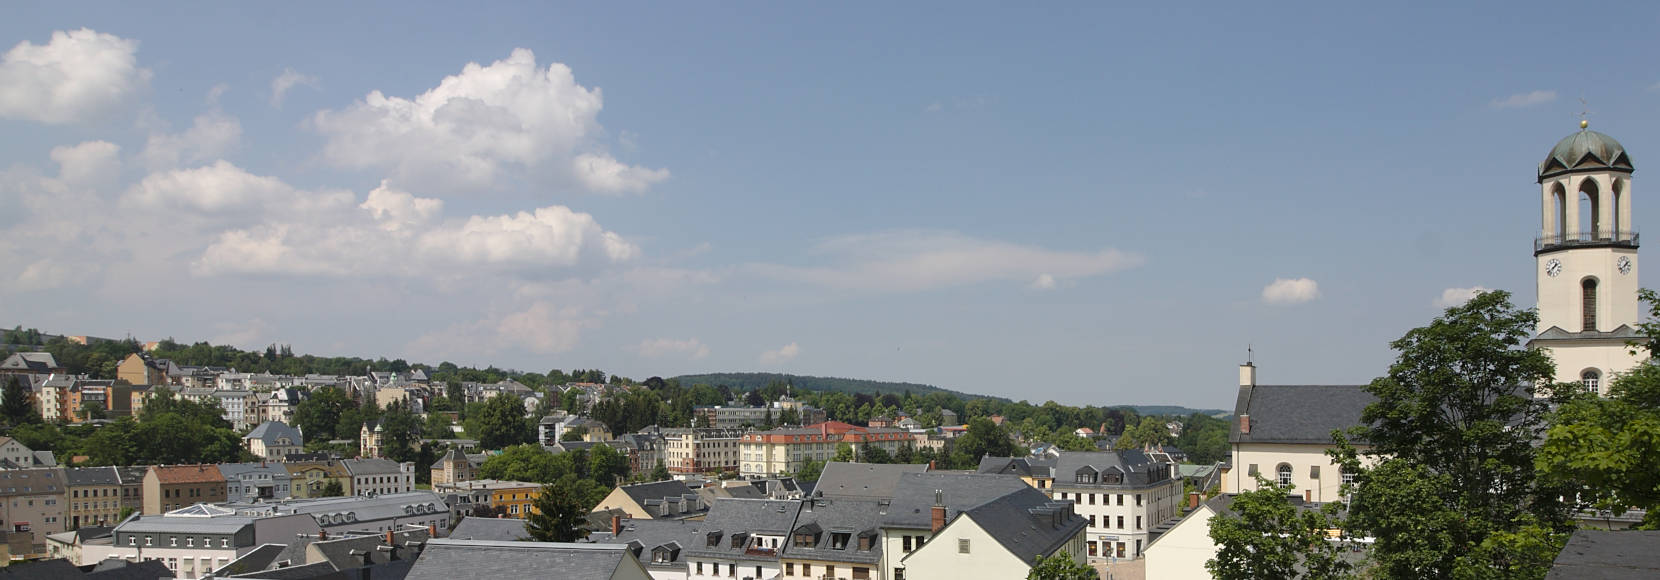 Stadt Auerbach